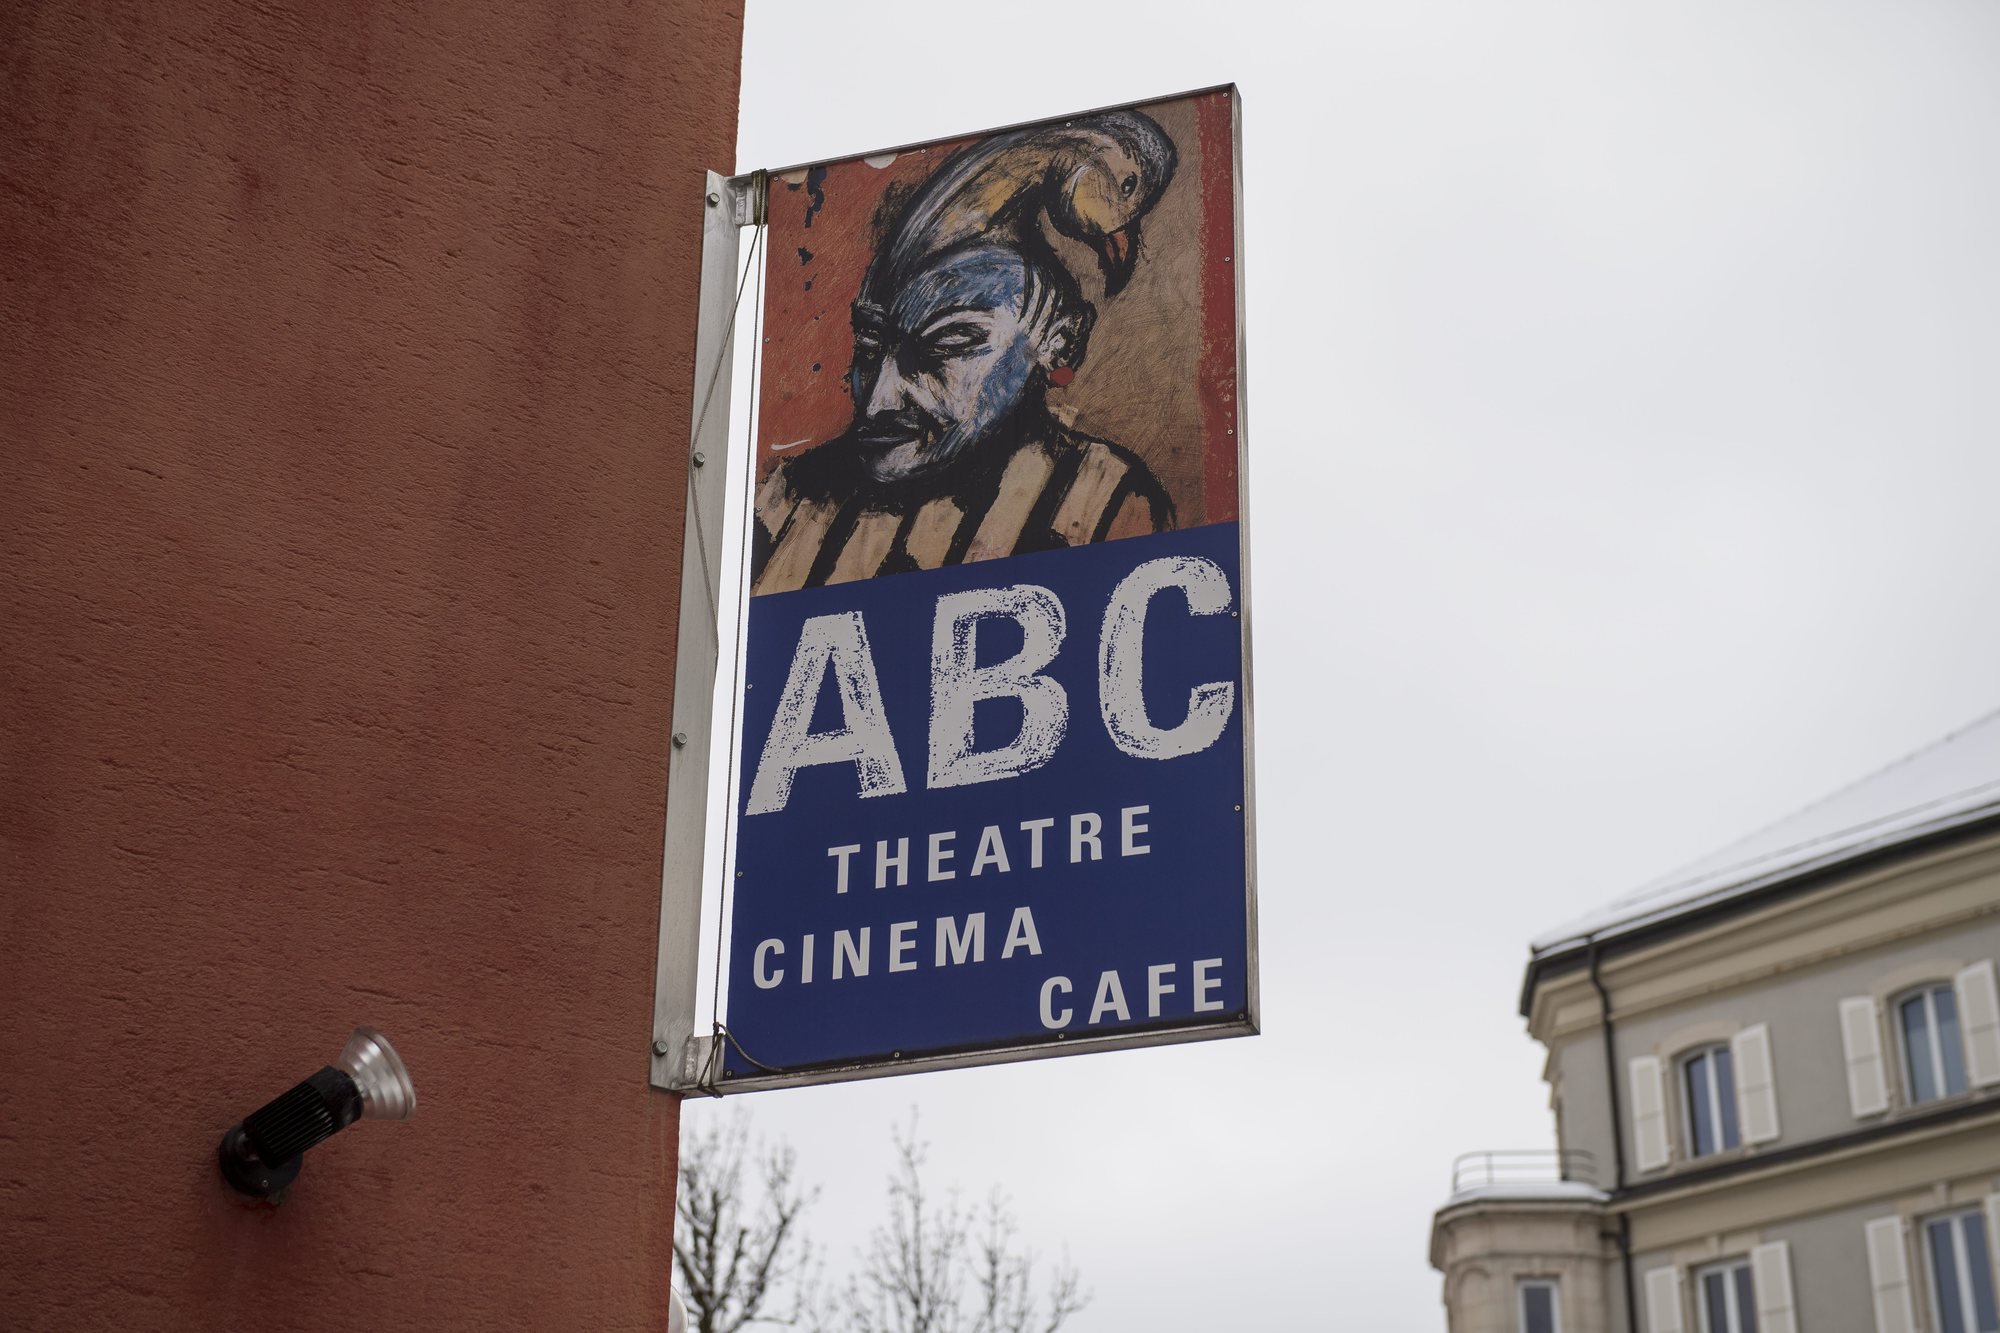 CP du Theatre ABC pour son 50e anniversaire

La Chaux-de-Fonds, le 11.01.2017
Photo : Lucas Vuitel